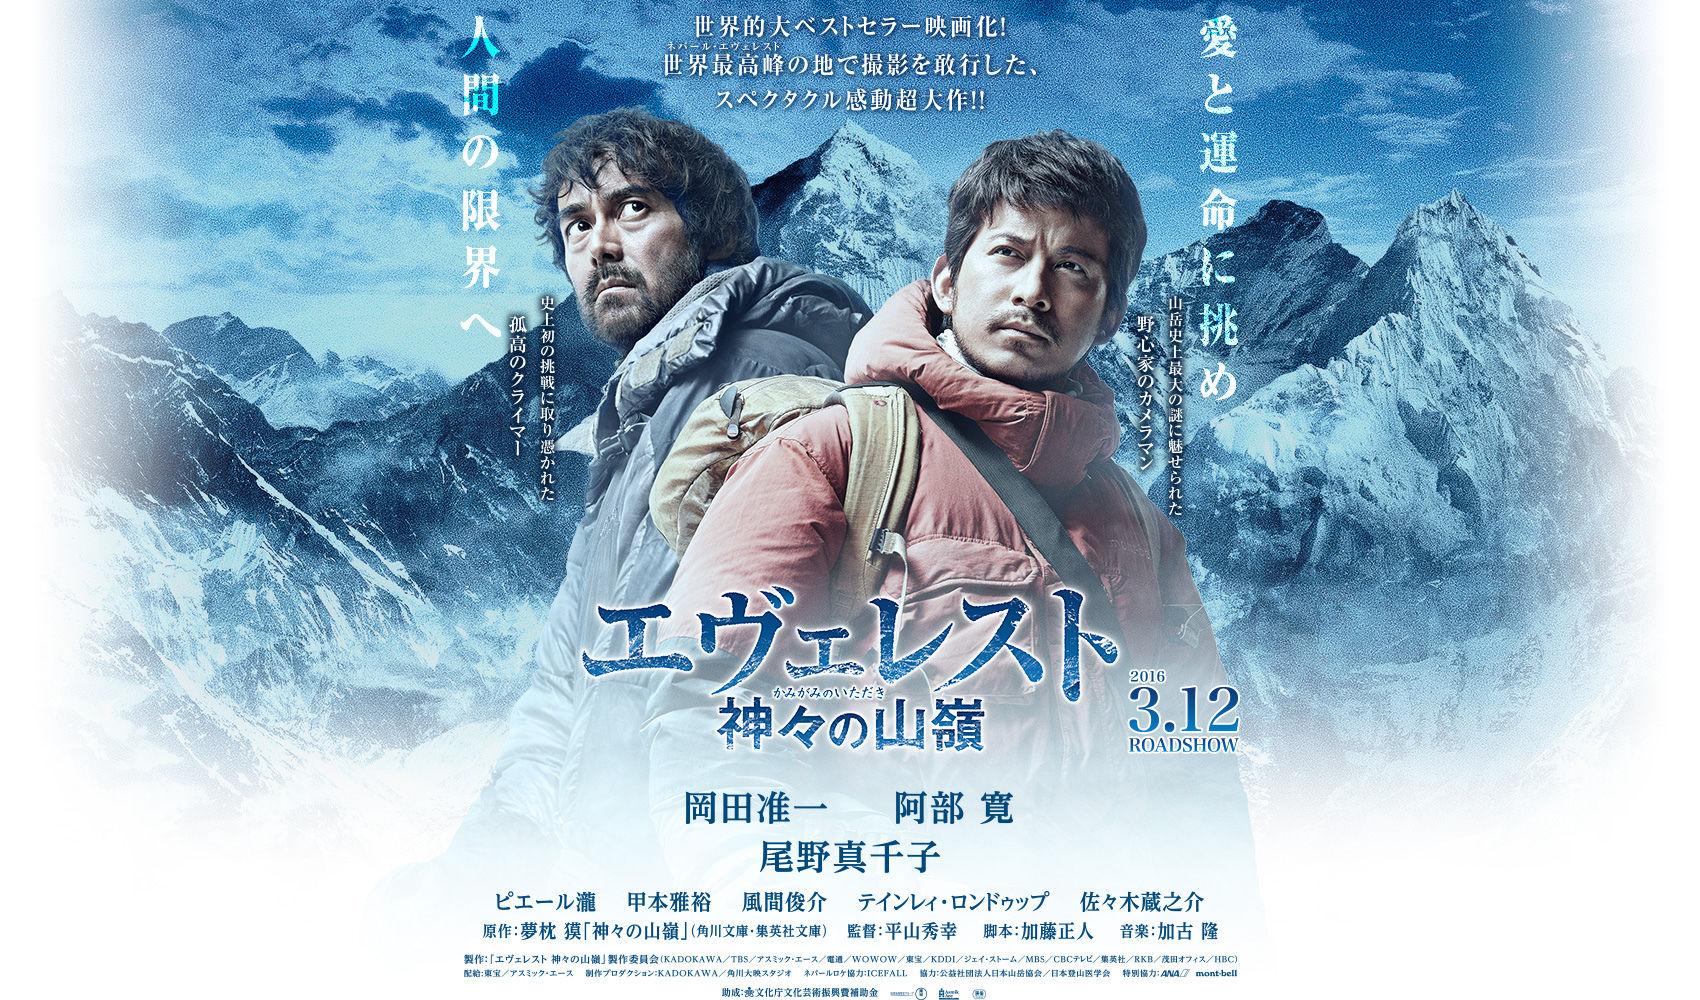 مشاهدة فيلم Everest The Summit of the Gods (2016) مترجم